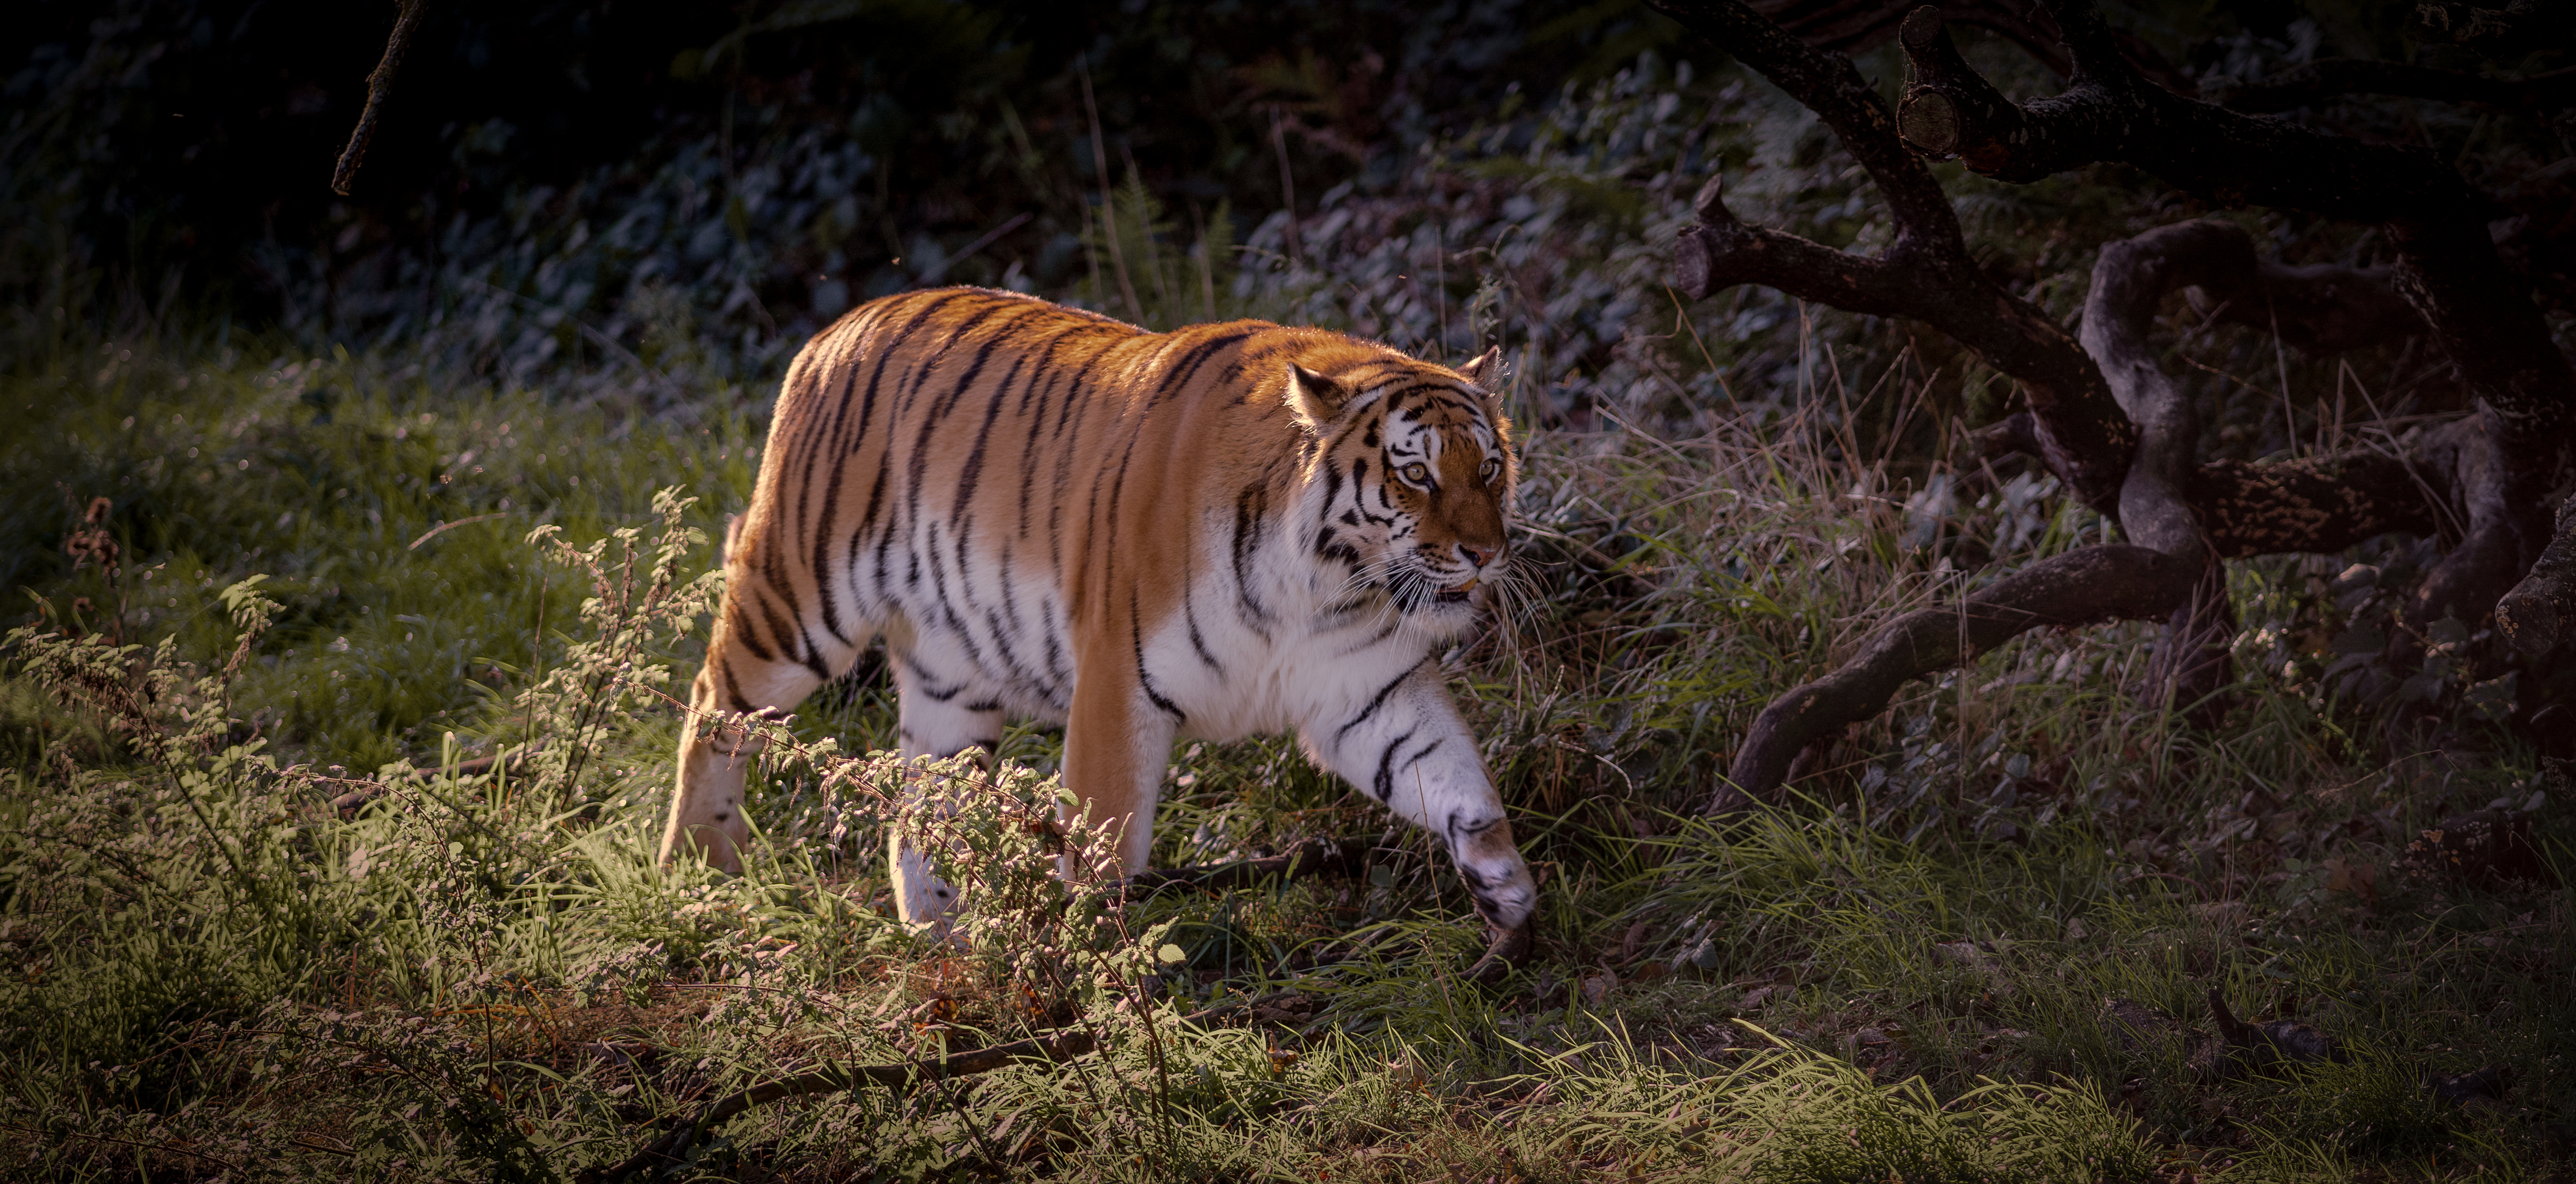 Скачать бесплатно амурский тигр, хищник заставку · бесплатная фотография от Fonwall